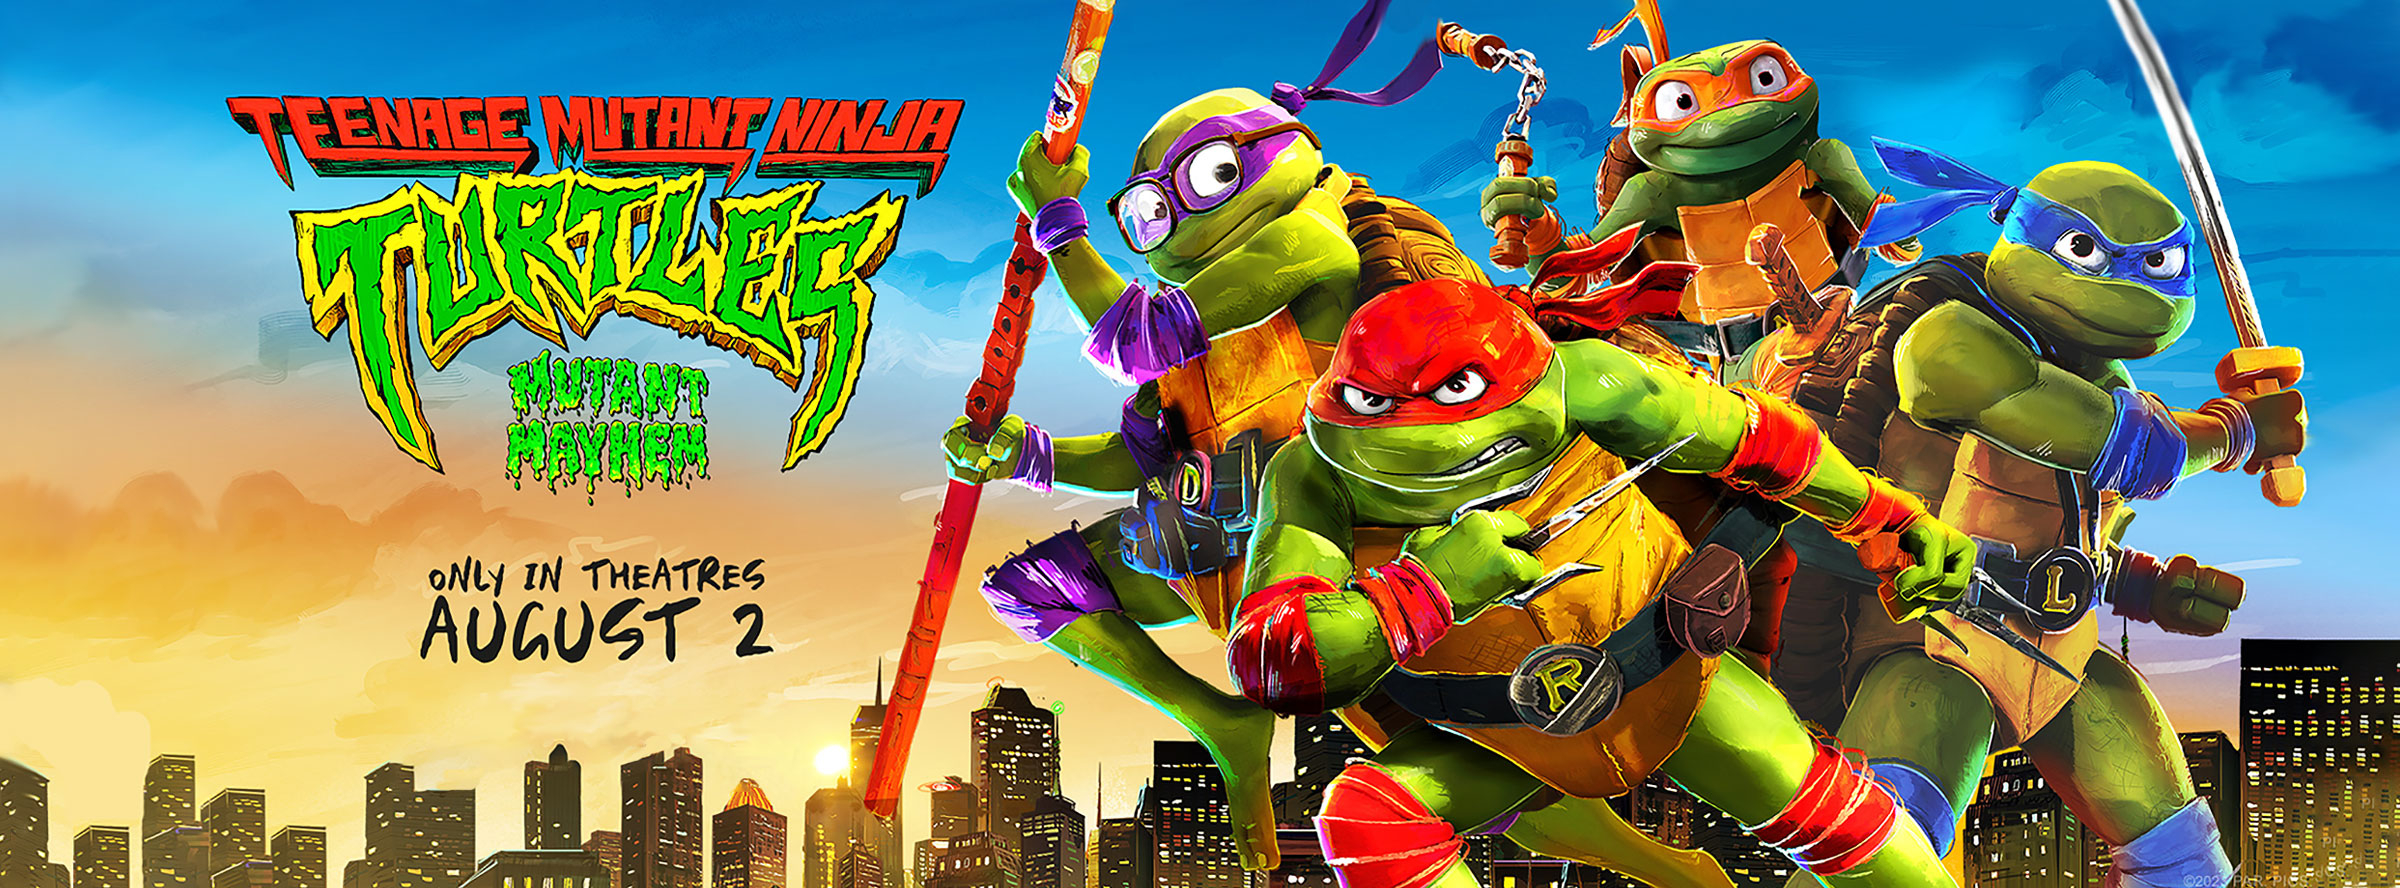 Slider Image for Teenage Mutant Ninja Turtles: Mutant Mayhem